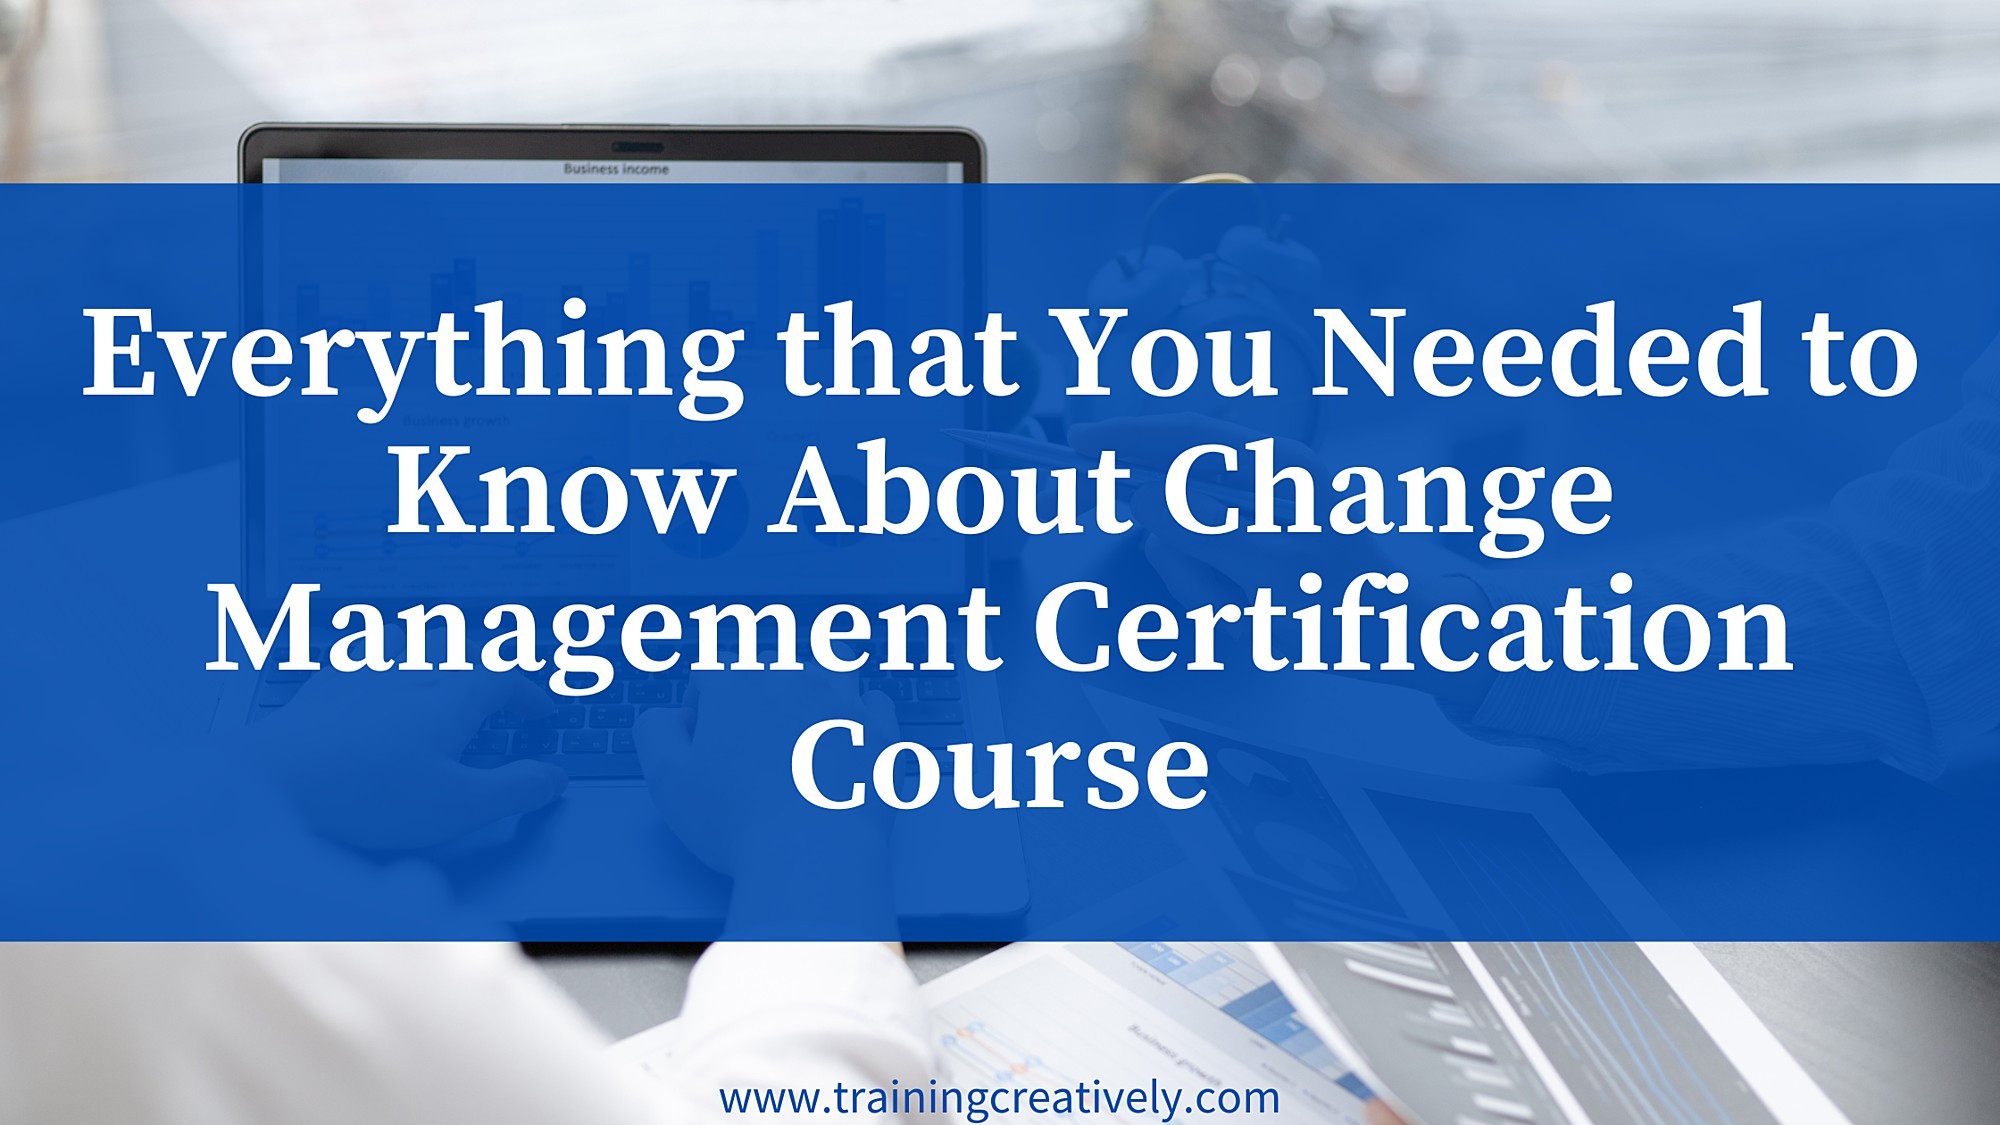 Change Management course